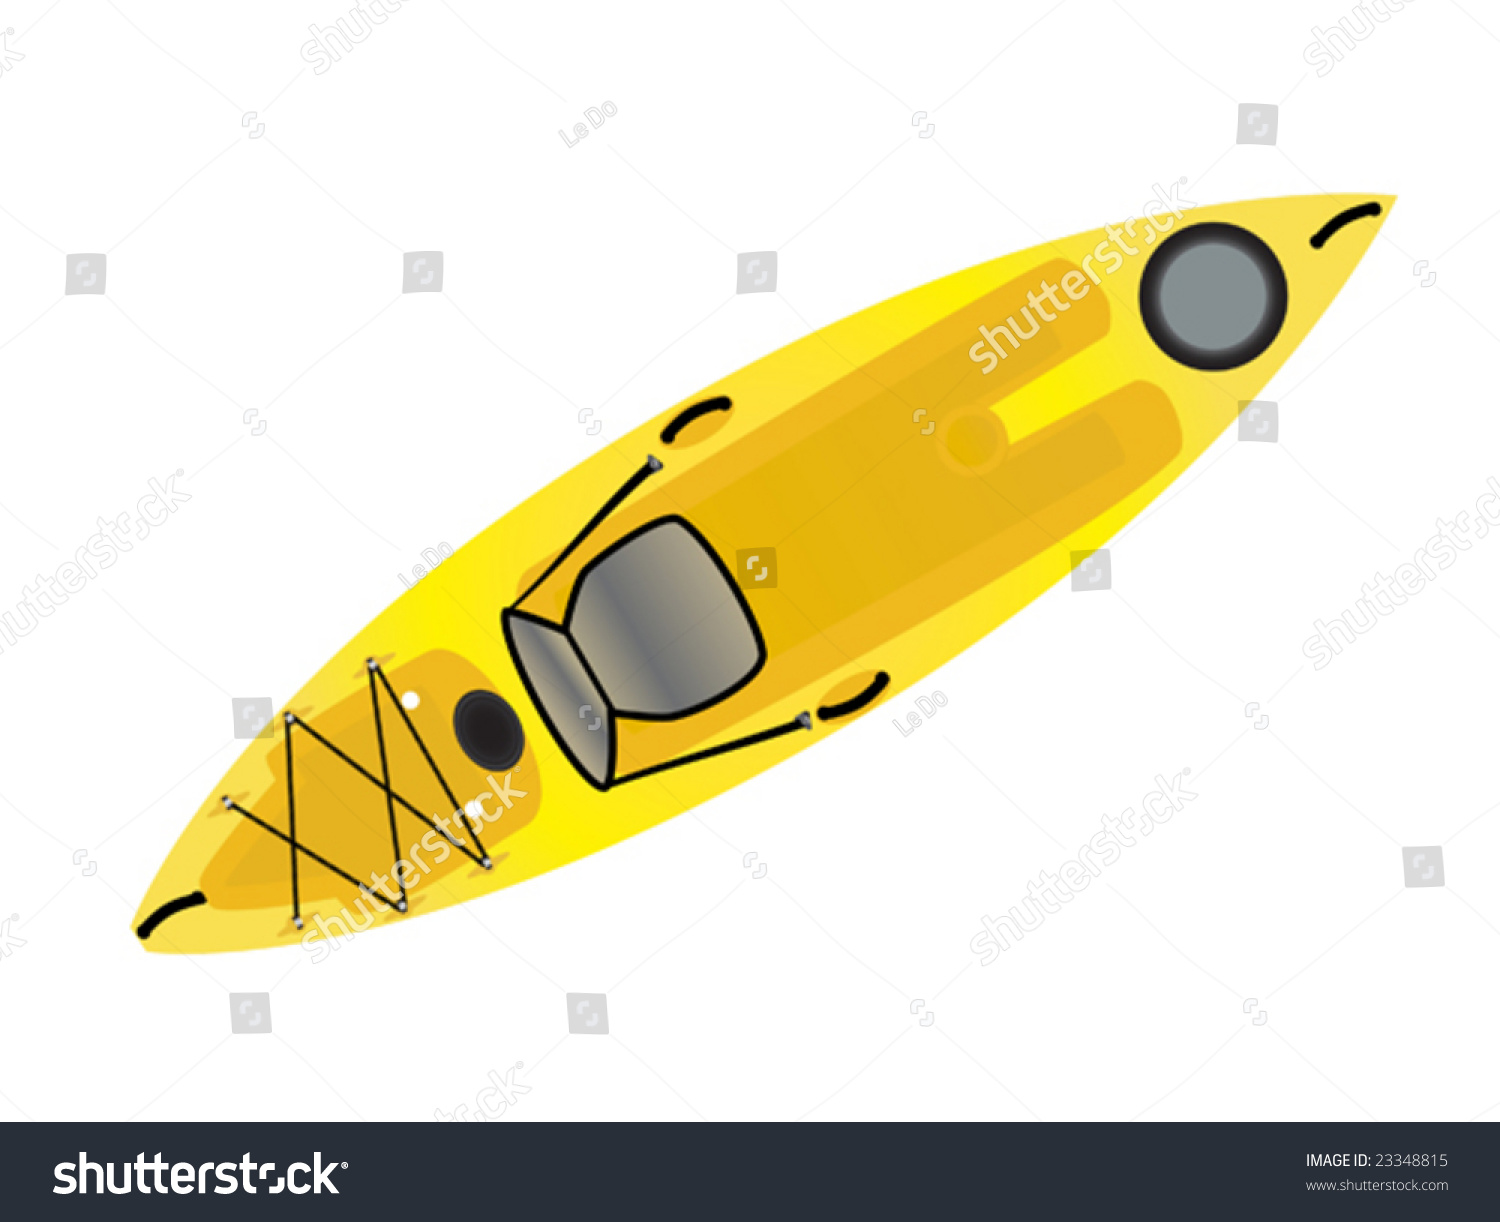 kayak cartoon clipart - photo #28